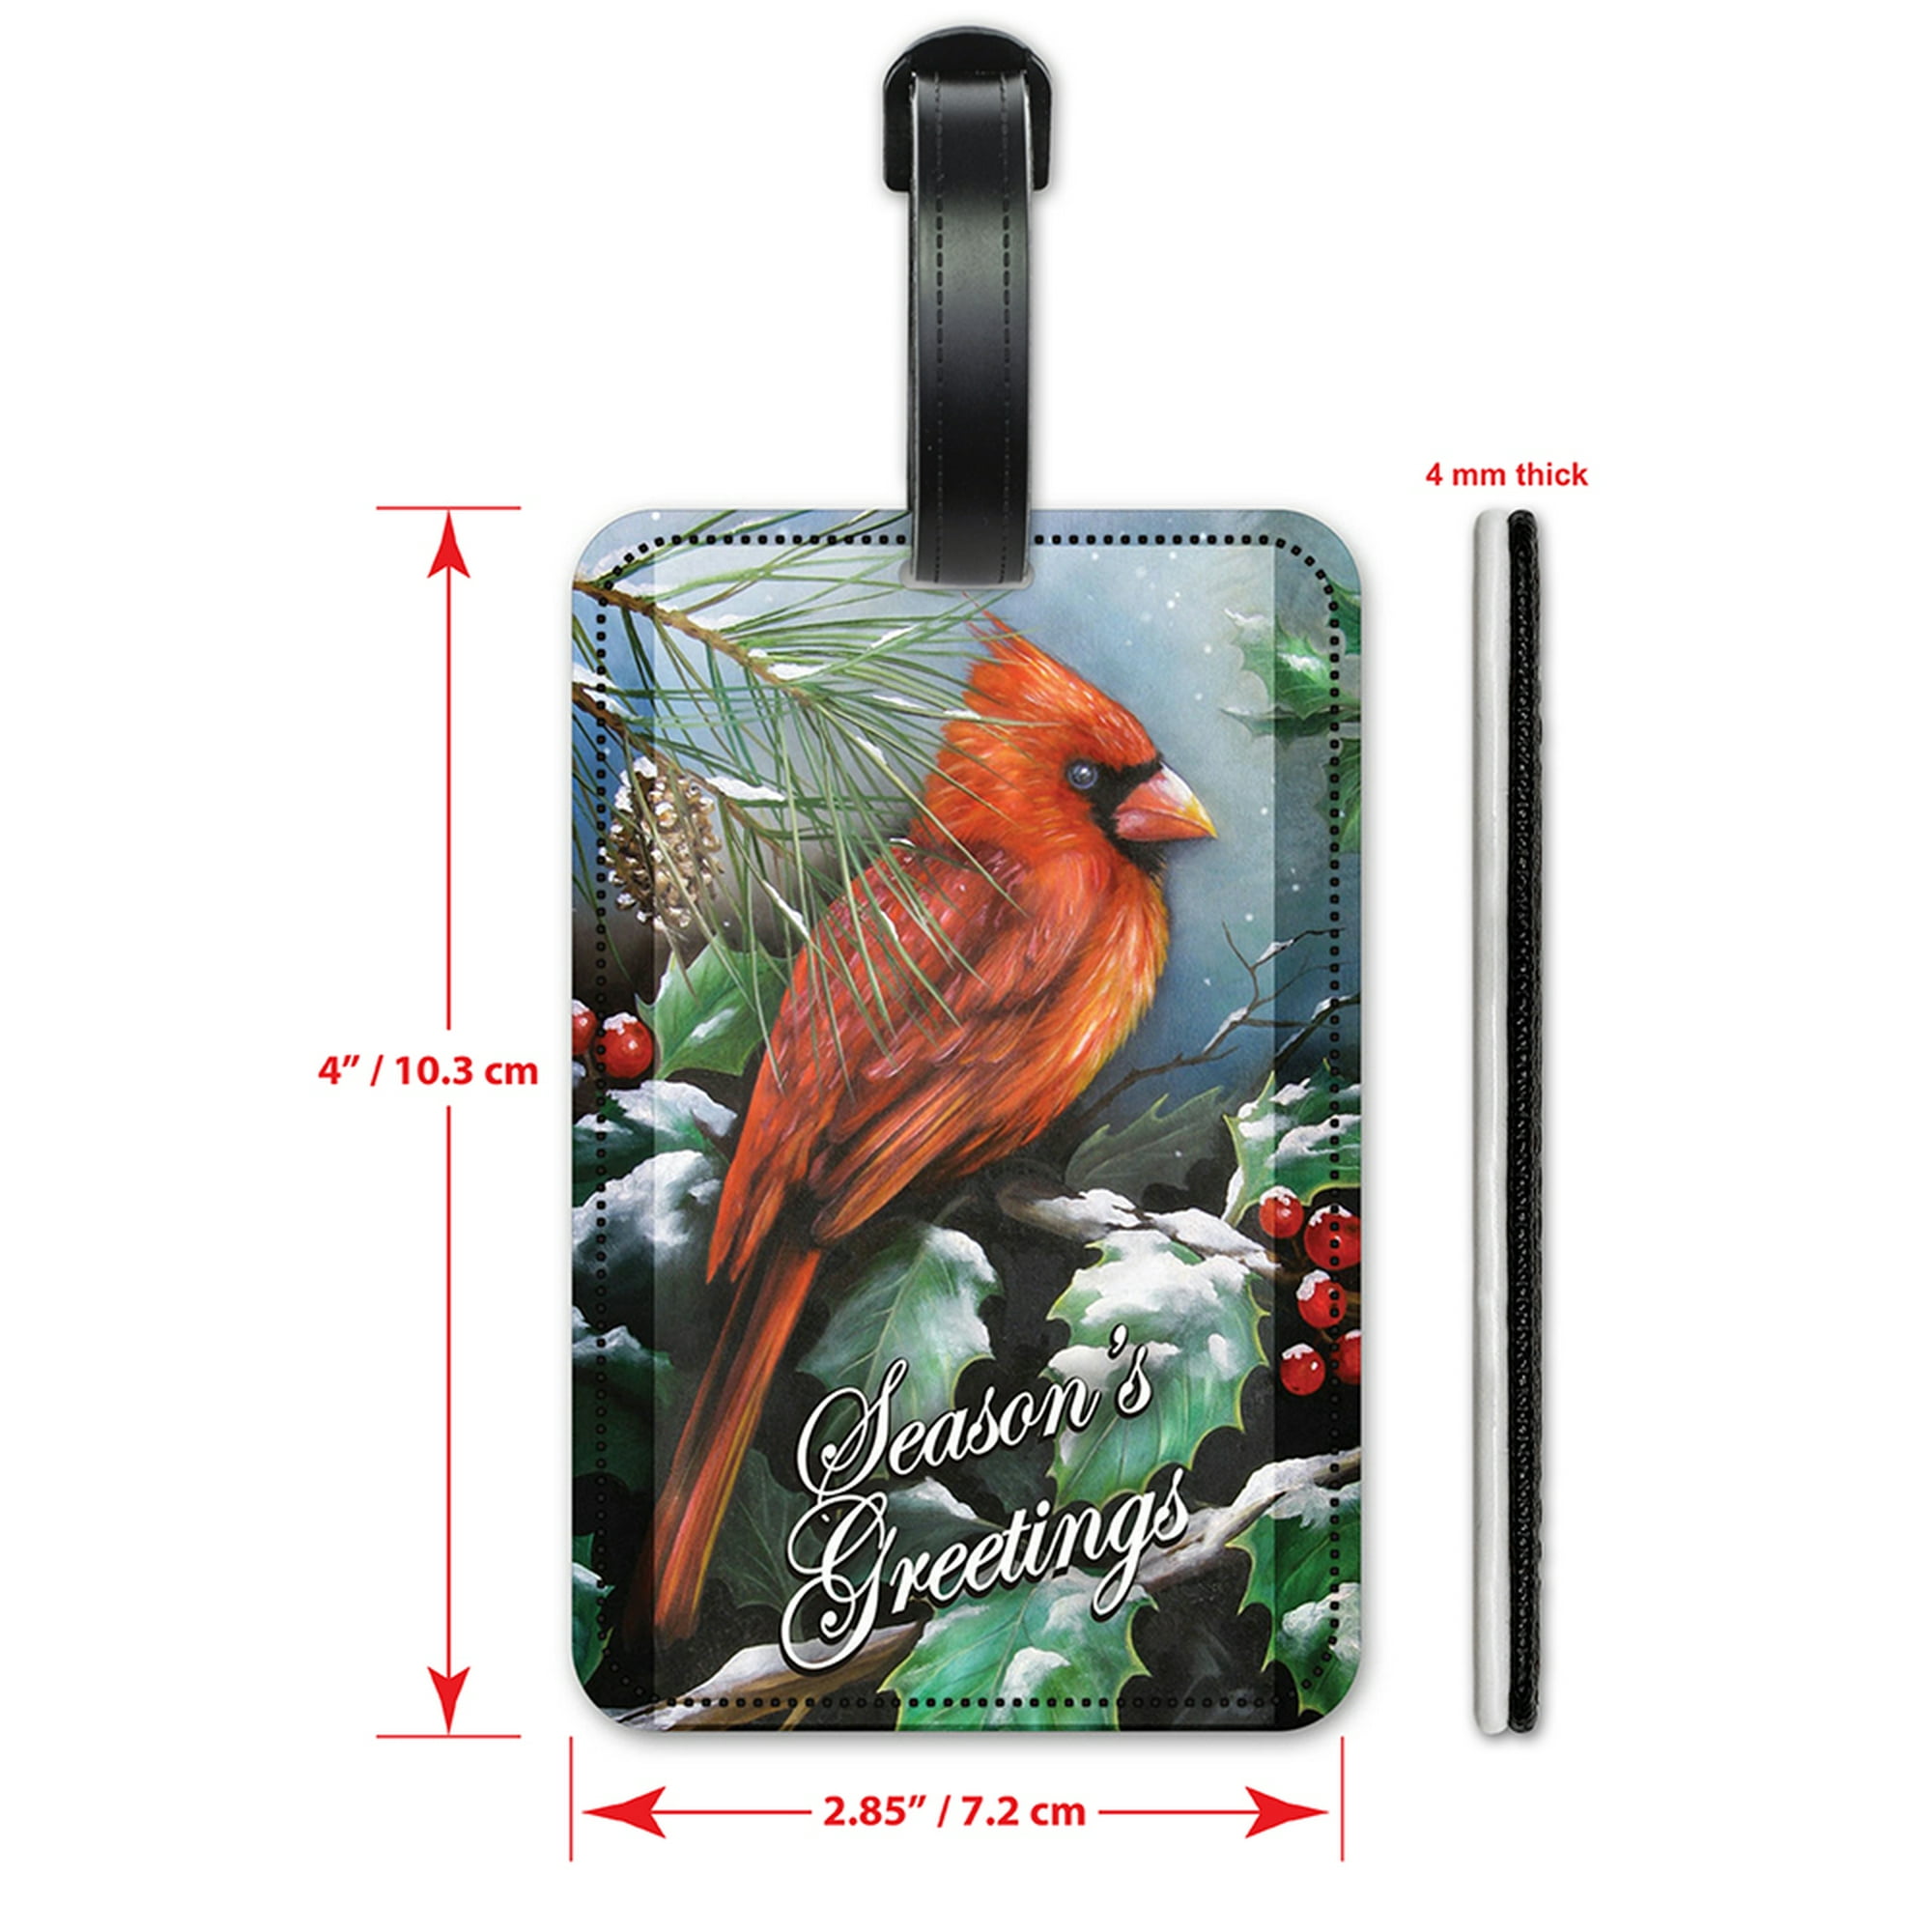 Cardinal Luggage Tag 